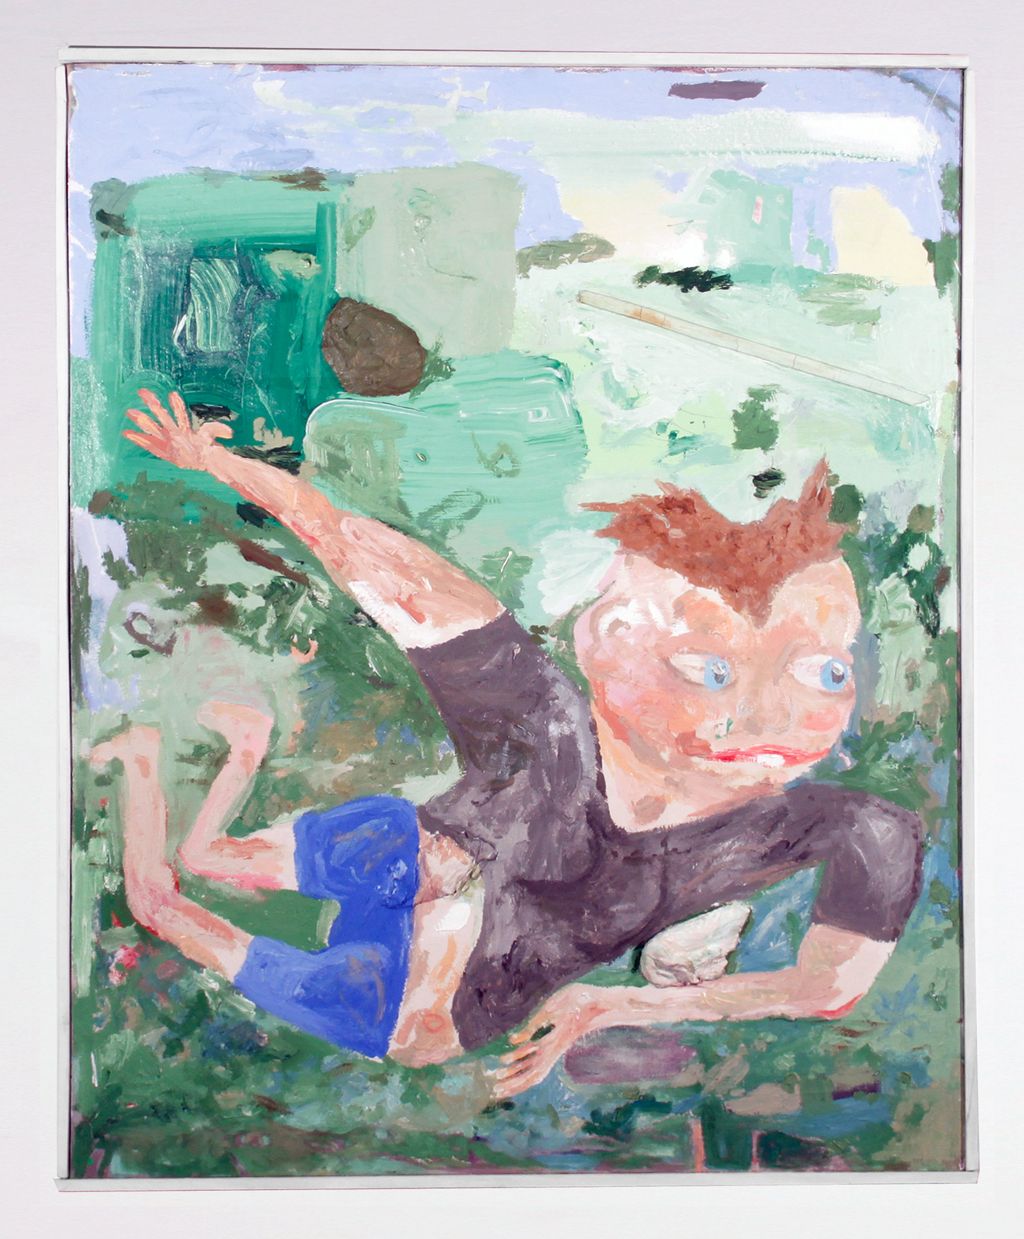 Nicholas Buffon, BRUNETTE, 2013, oil, hair, wood, plaster on canvas, 43 × 34 in.